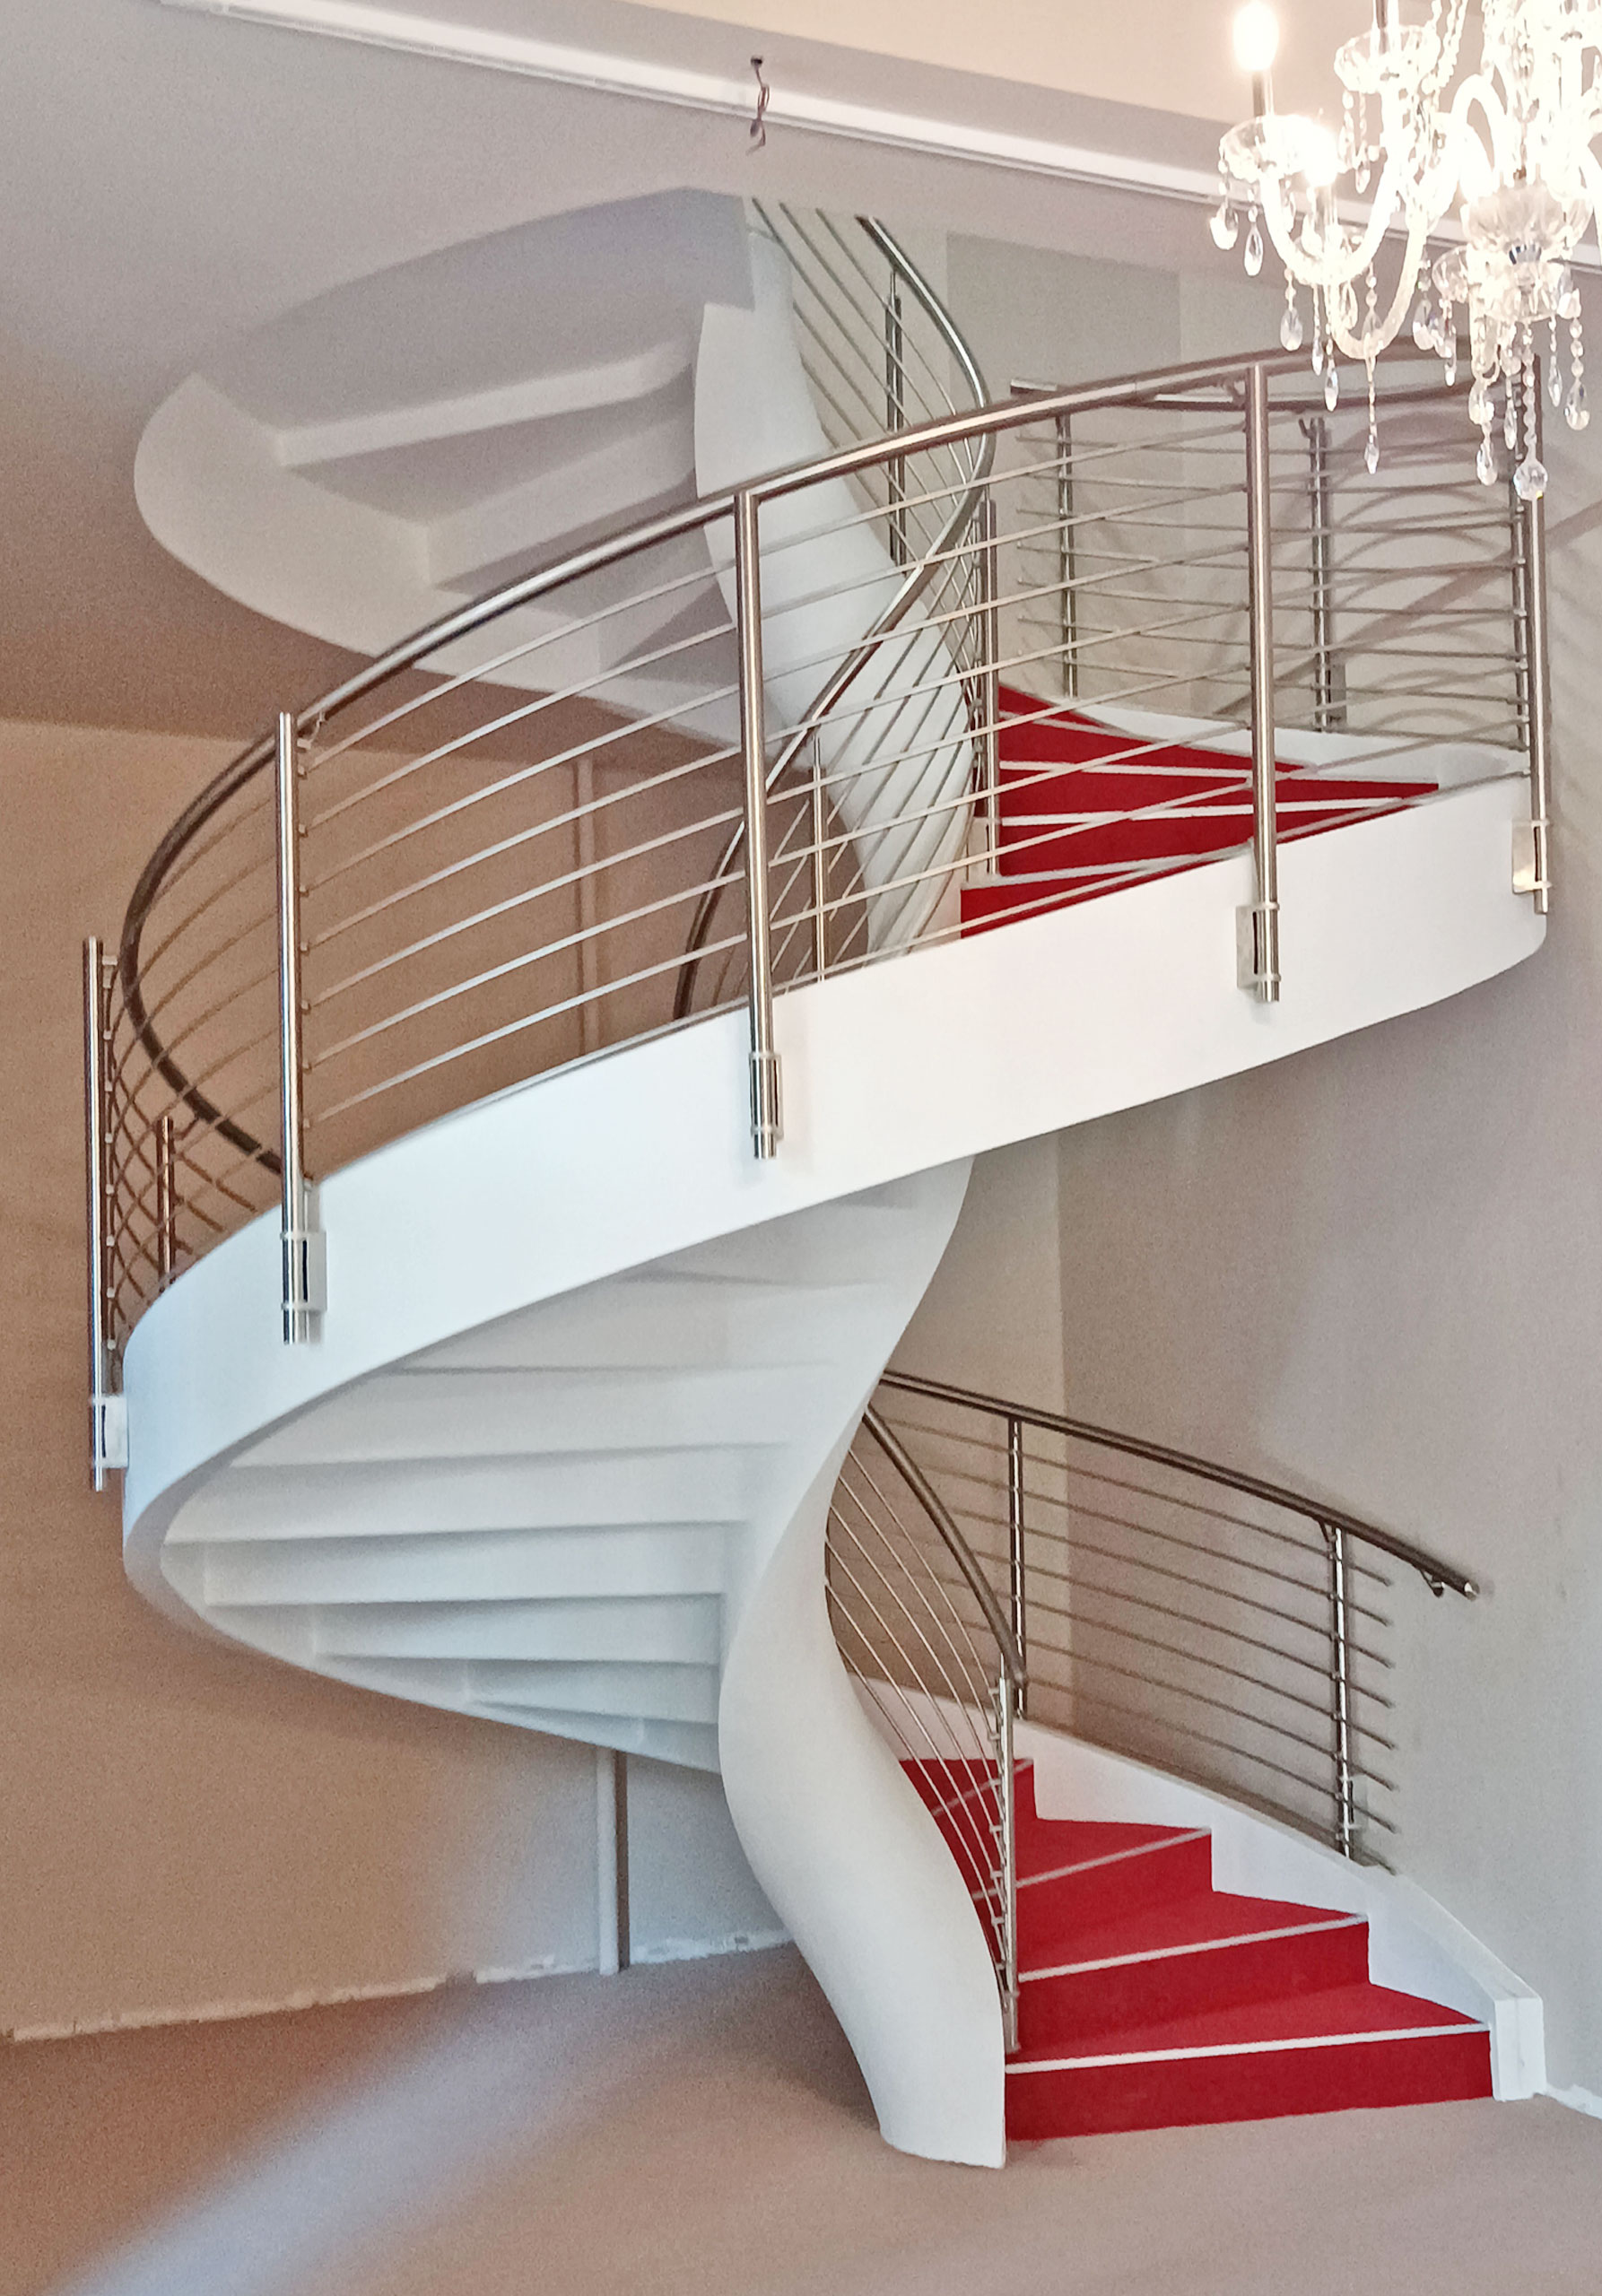 Escalera helicoidal con peldaños cubiertos con alfombra roja construida en una escuela de Verona, Italia